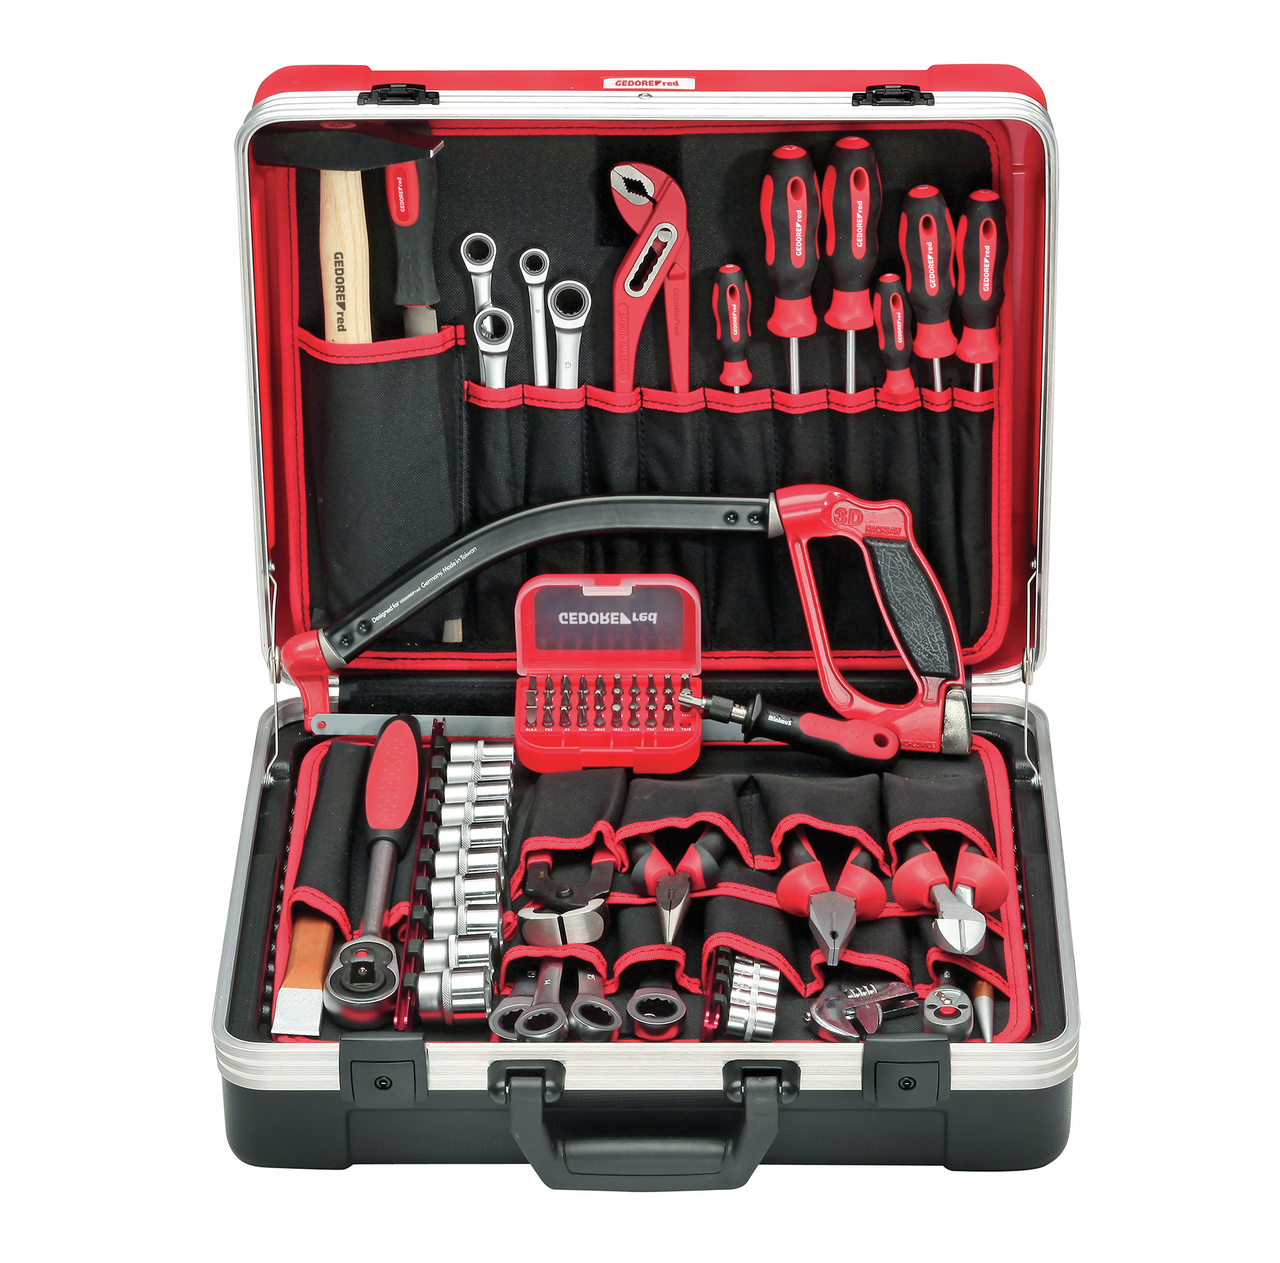 R21650072 - Juego de herramientas BASIC incl. maleta de herramientas, 72 piezas